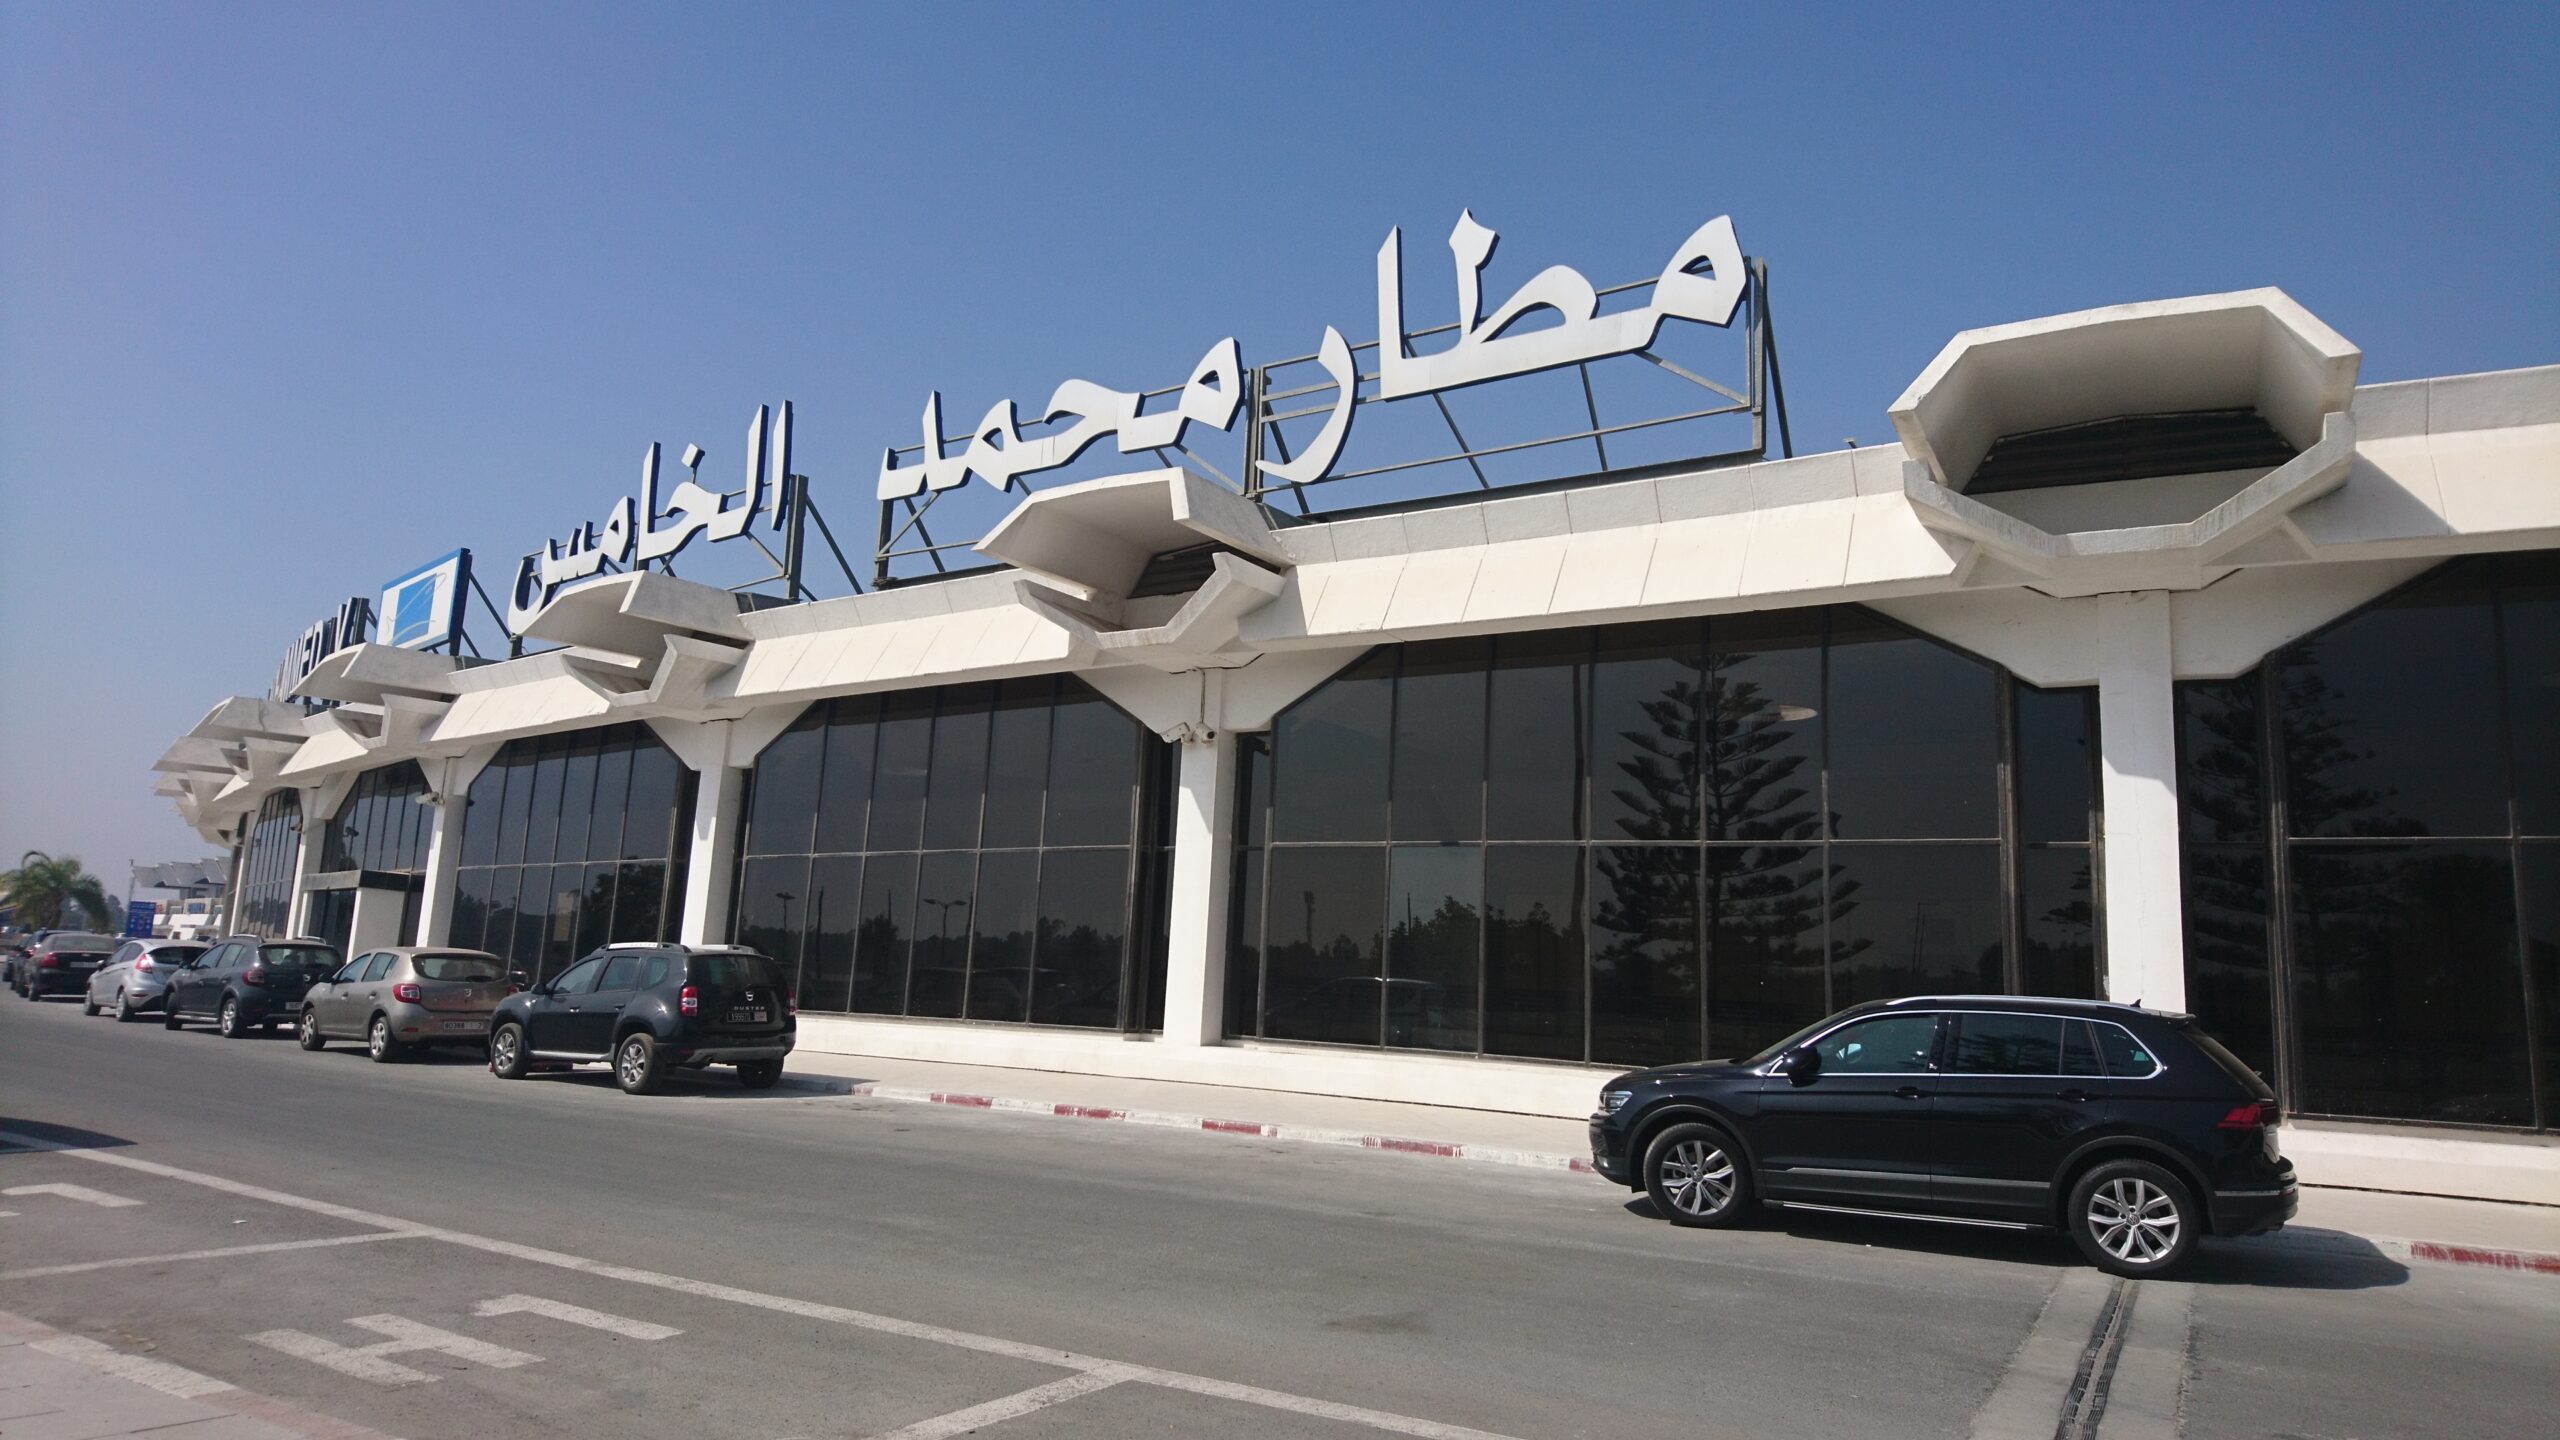 مطار محمد الخامس